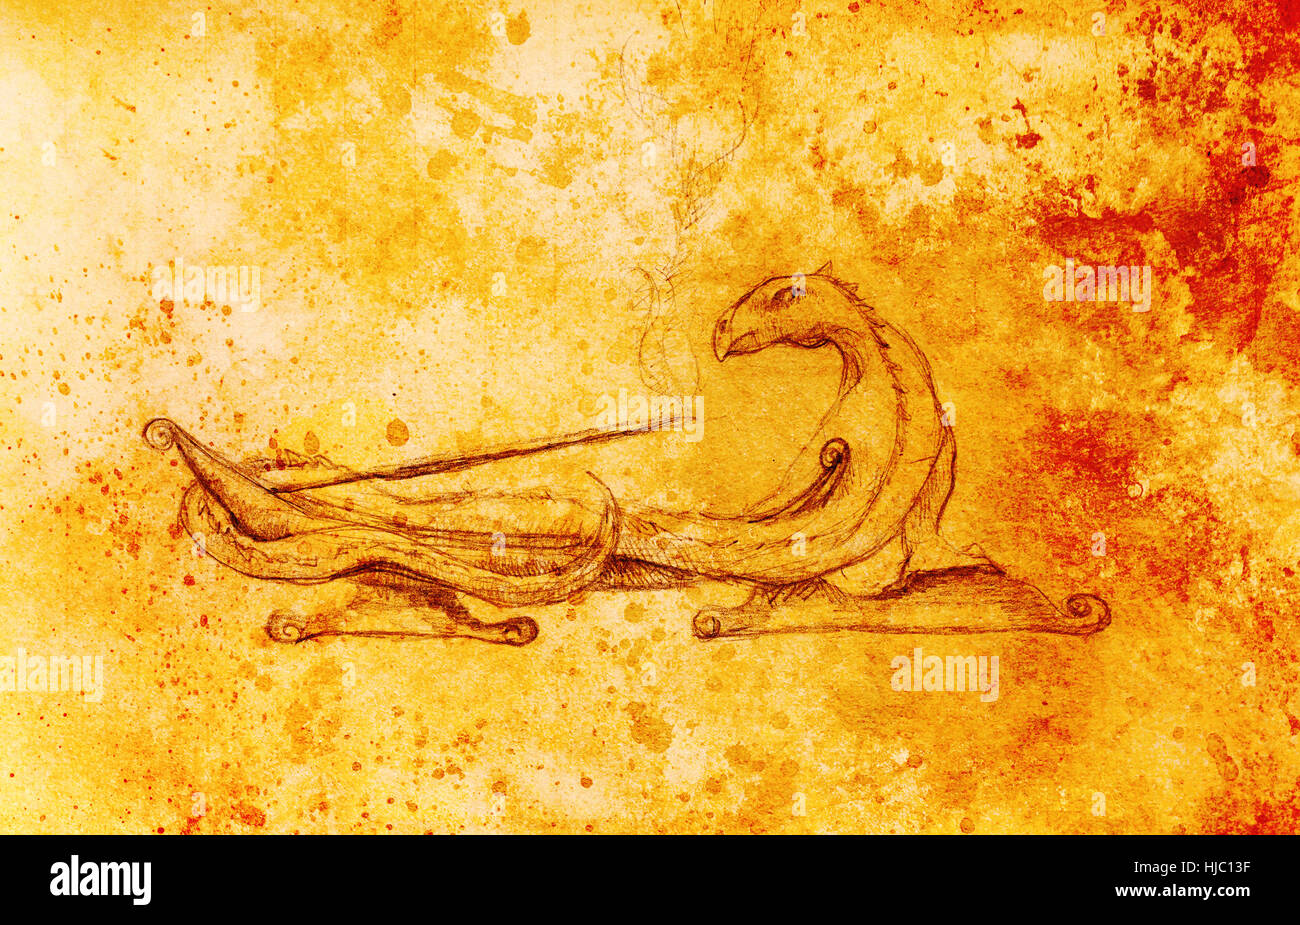 Porte-encens en forme de dragon sur fond abstrait. Banque D'Images